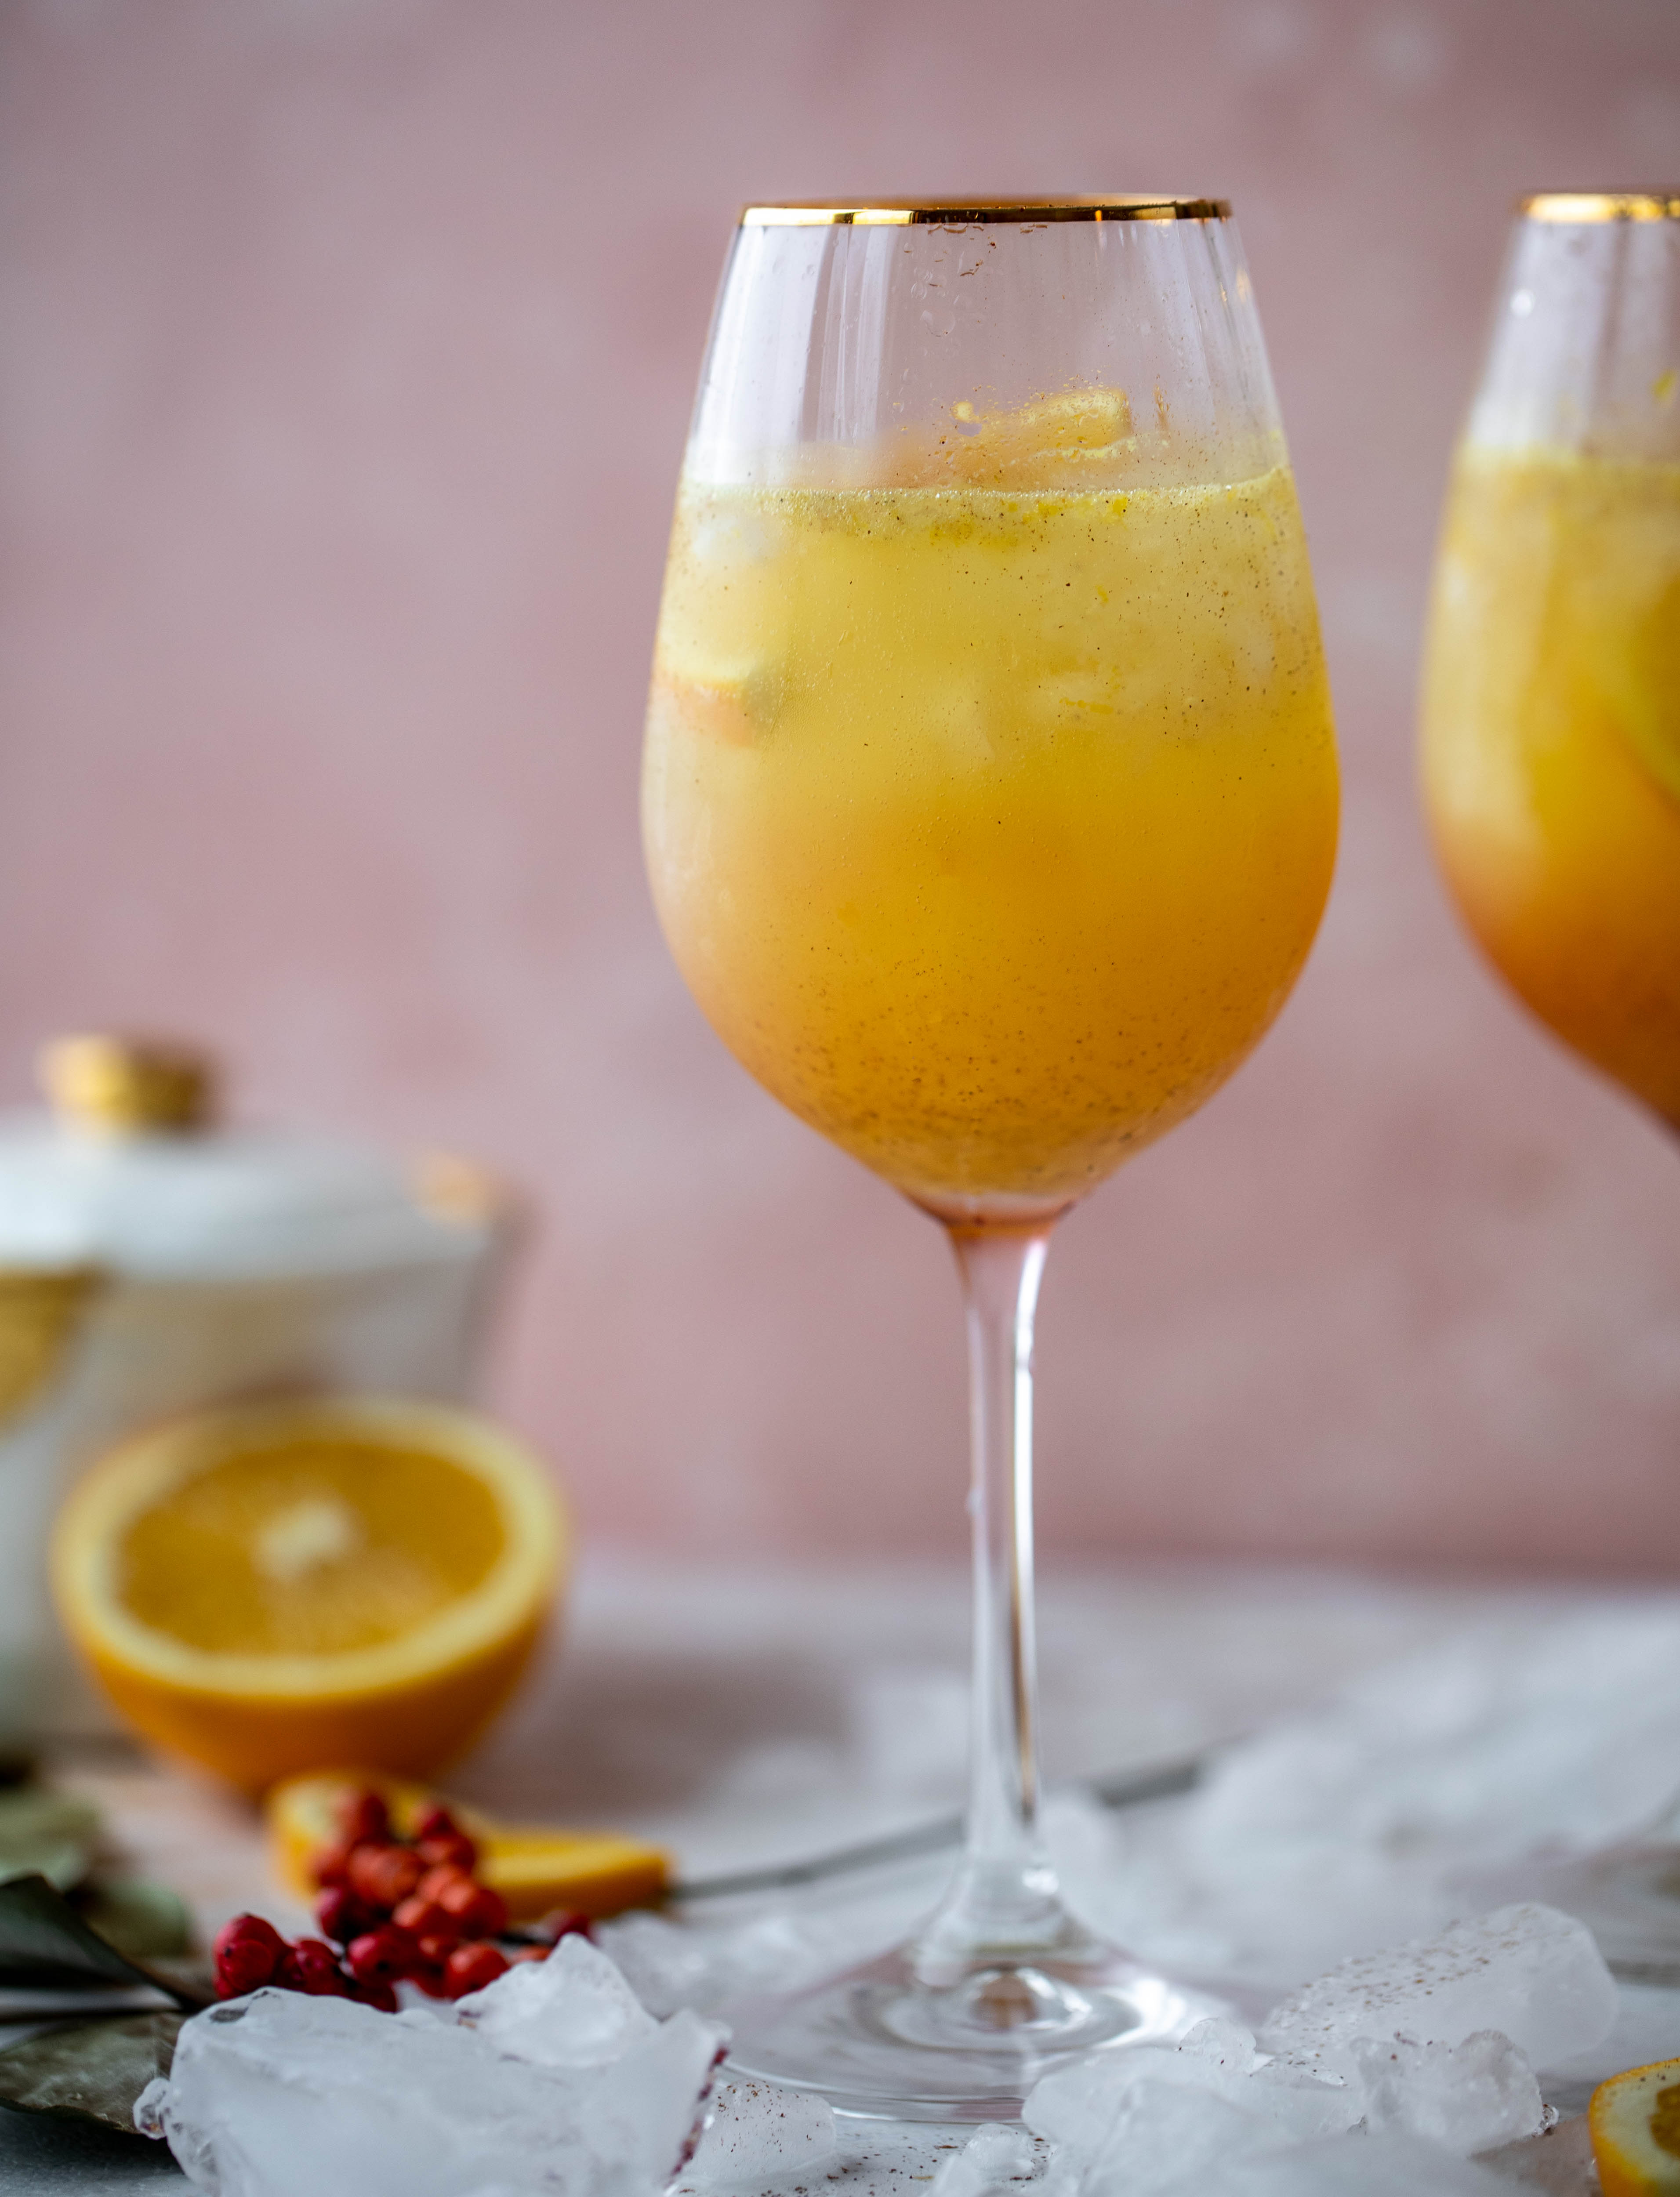 这款加了香料的橙汁汽水是一种更花哨的含羞草，类似于aperol汽水!一种新鲜的香料橙汁，混合了普罗赛克和苏打水。太好了!